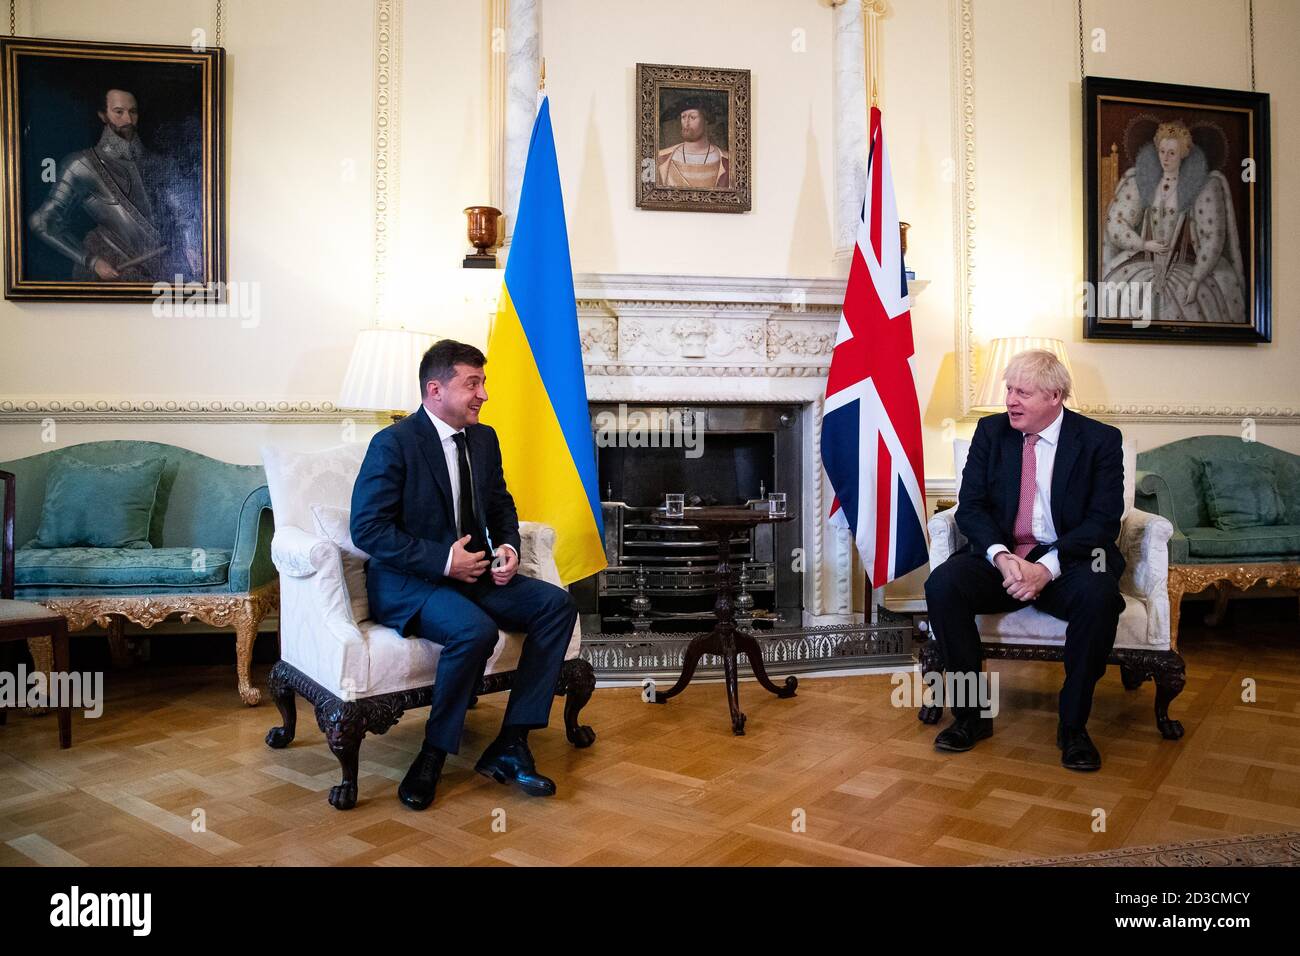 Le Premier ministre Boris Johnson (à droite) lors d'une réunion avec le président ukrainien, Volodymyr Zelenskyy à Downing Street, Londres, pour signer un accord de partenariat stratégique avec le président face au « comportement de la Russie envers le pays ». Banque D'Images